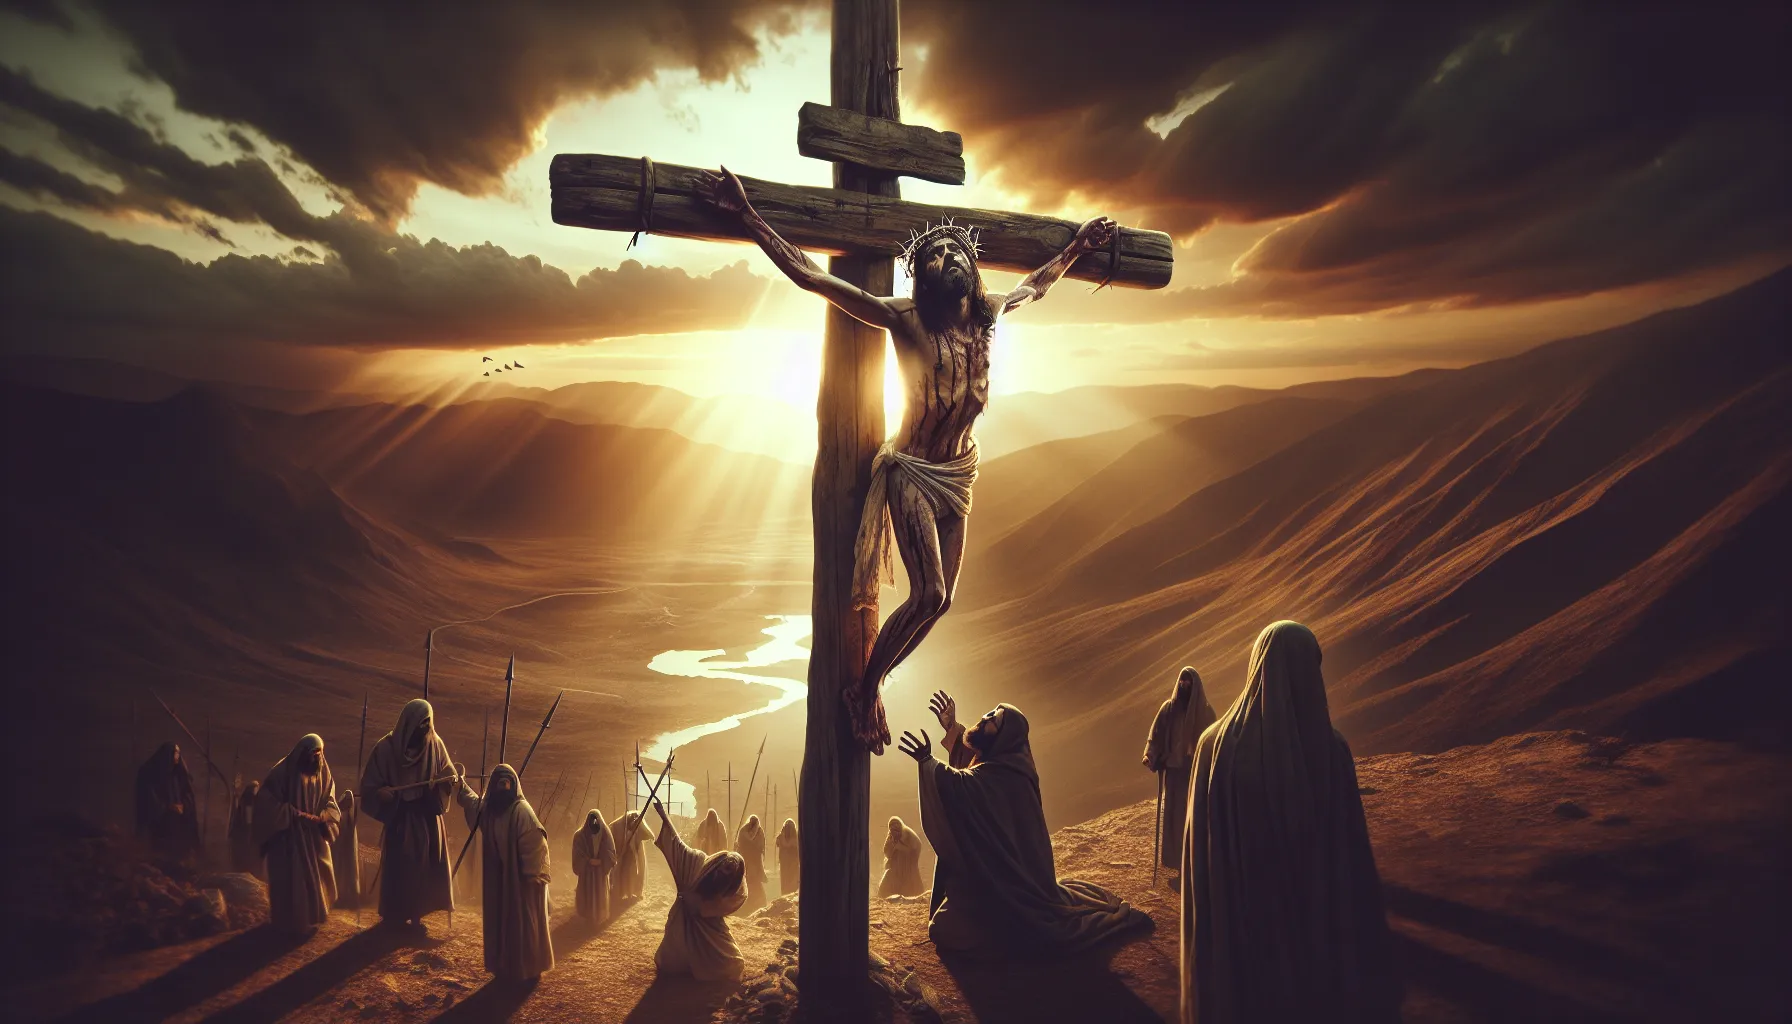 Imagen representativa de la crucifixión de Jesús en la cruz y su posterior descenso